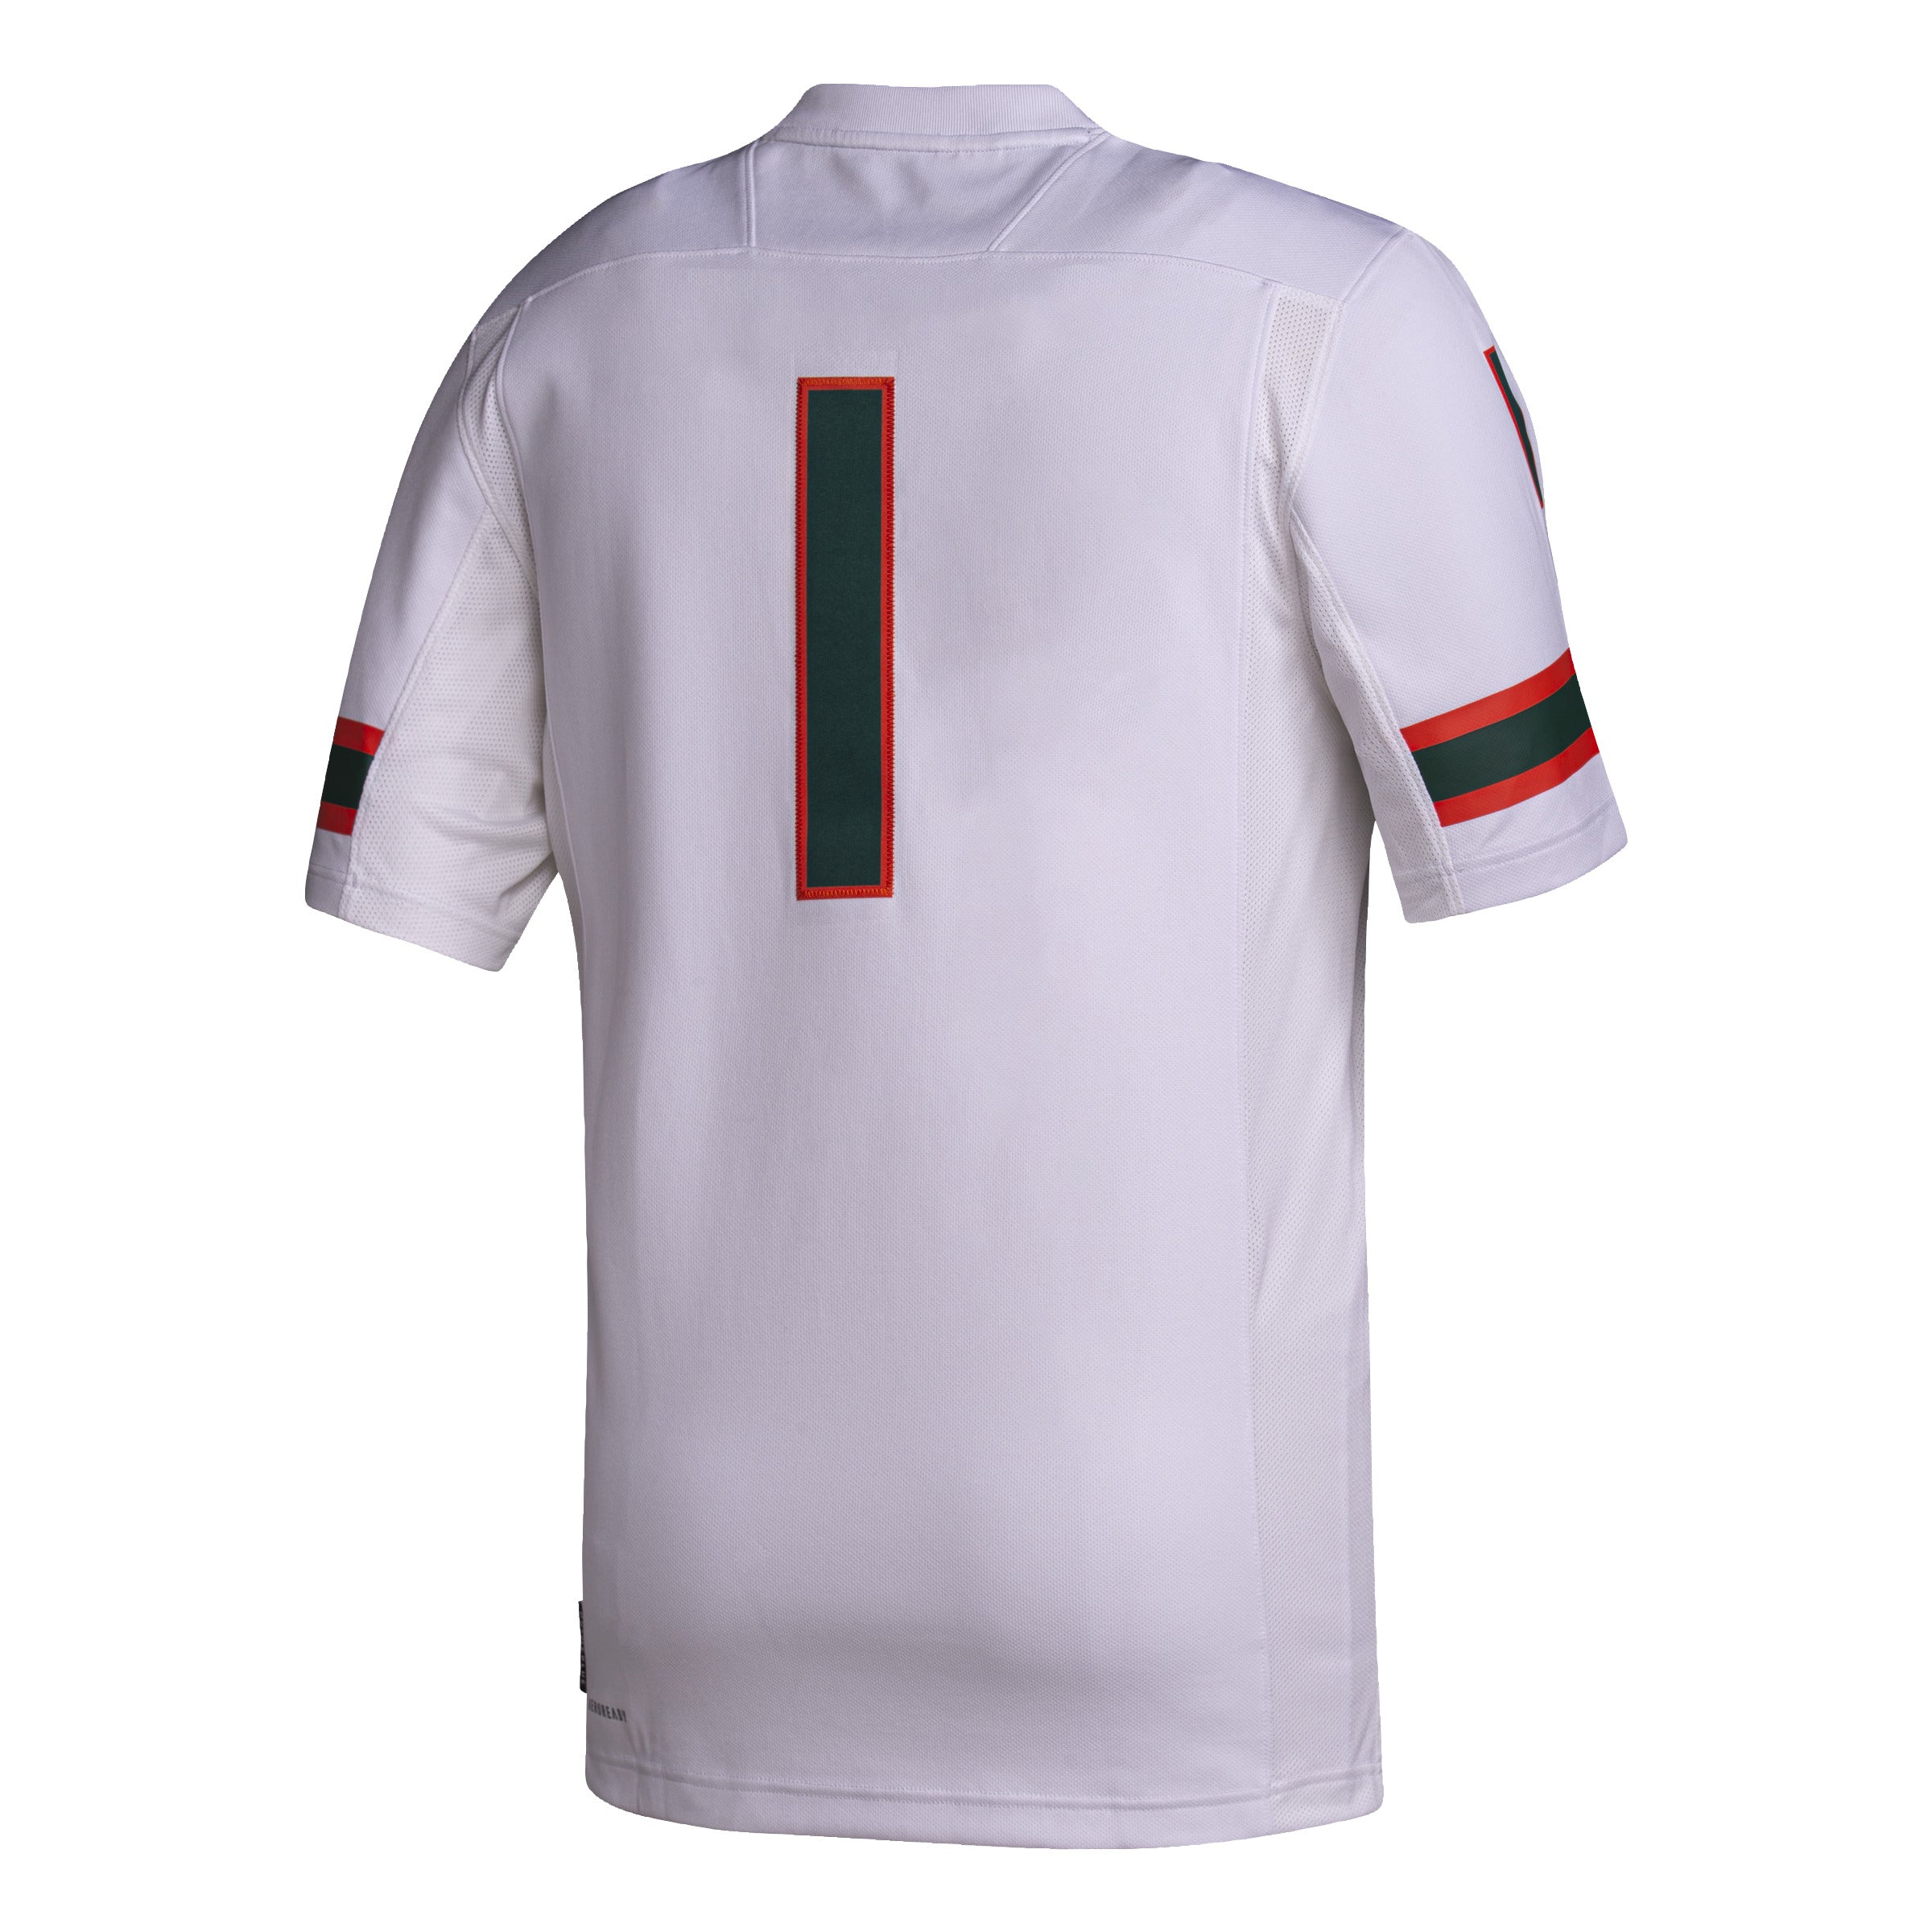 Miami Hurricanes adidas Premier Football Jersey #1 - White